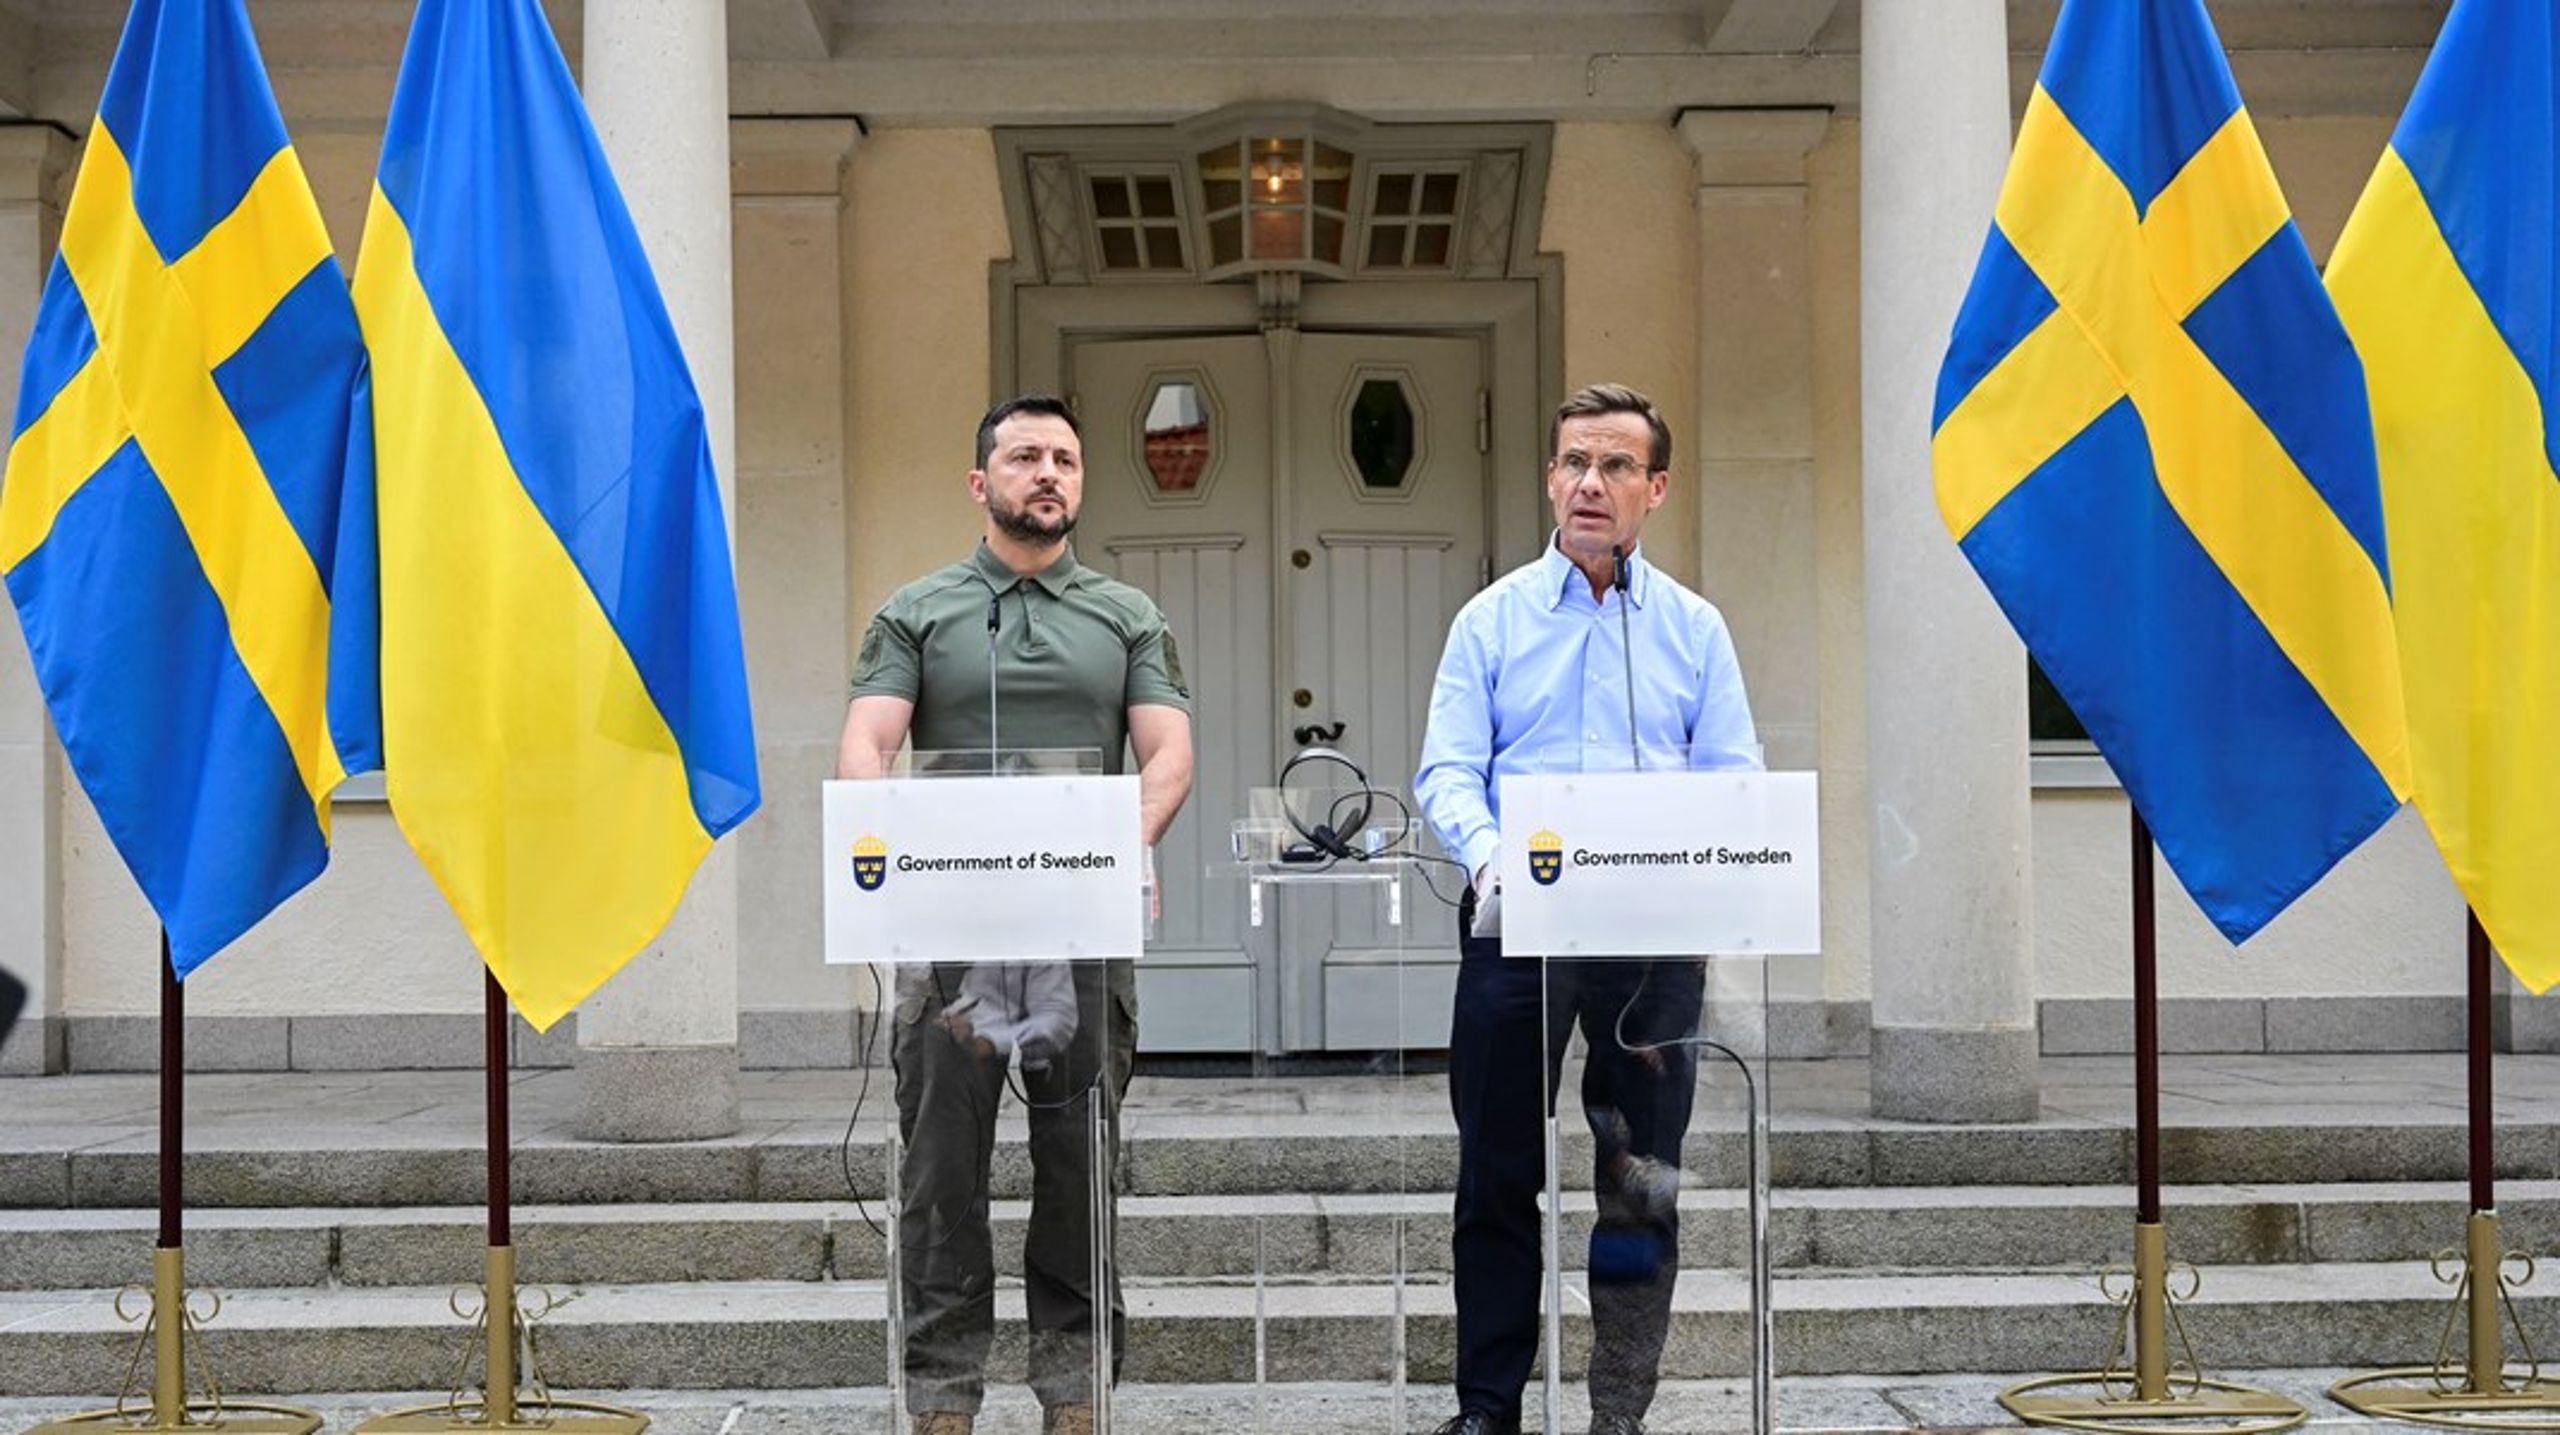 Sverige måste visa både Ukraina och världen att Sverige är en pålitlig partner i kris och återuppbyggnad, skriver debattören.